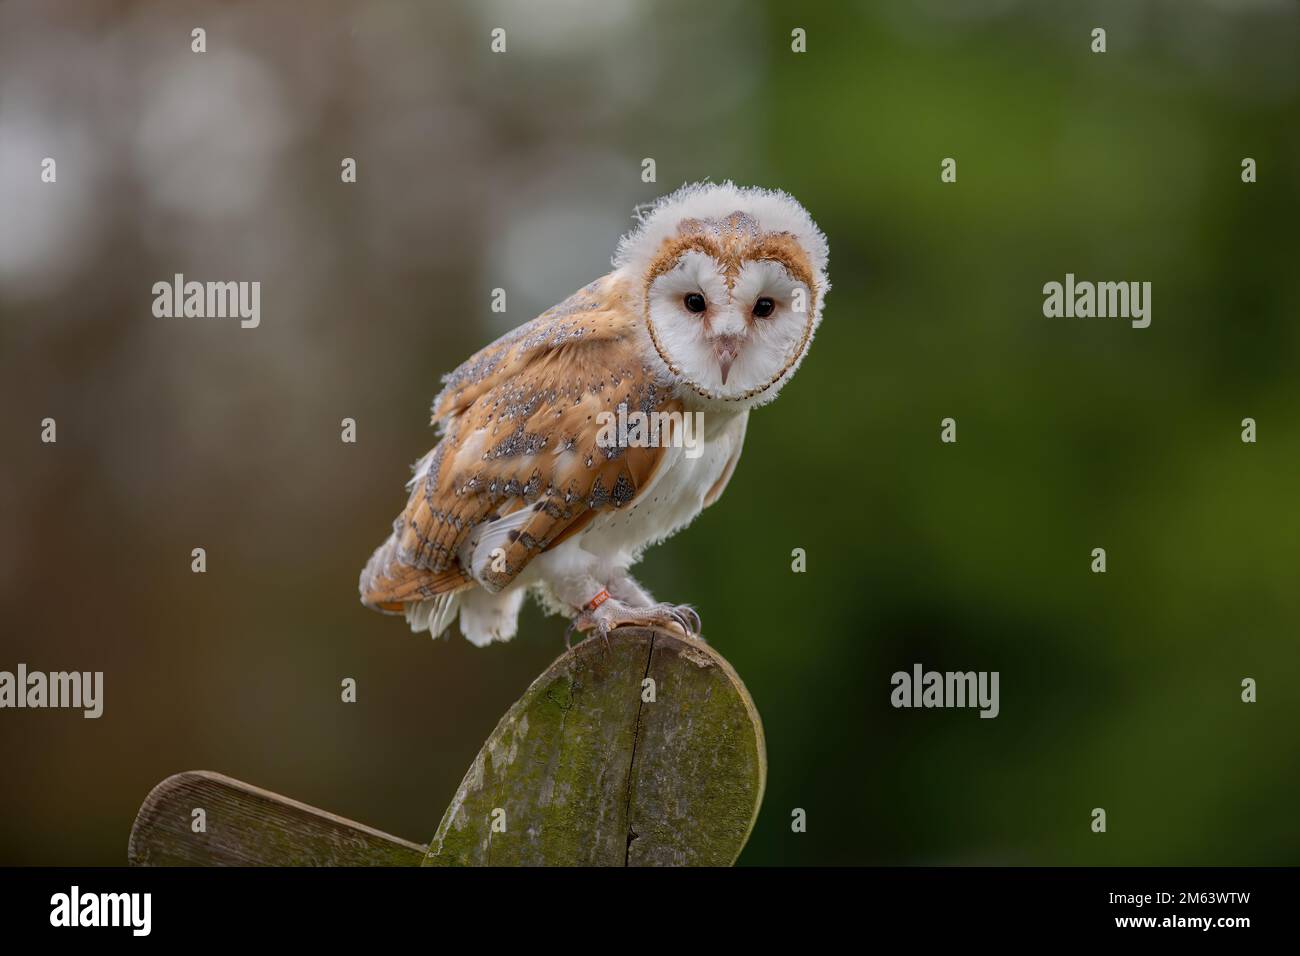 Petite Barn Owl, jeune femme ( Tyto Alba ) avec des peluches et des plumes. Faune perchée dans un environnement naturel Banque D'Images